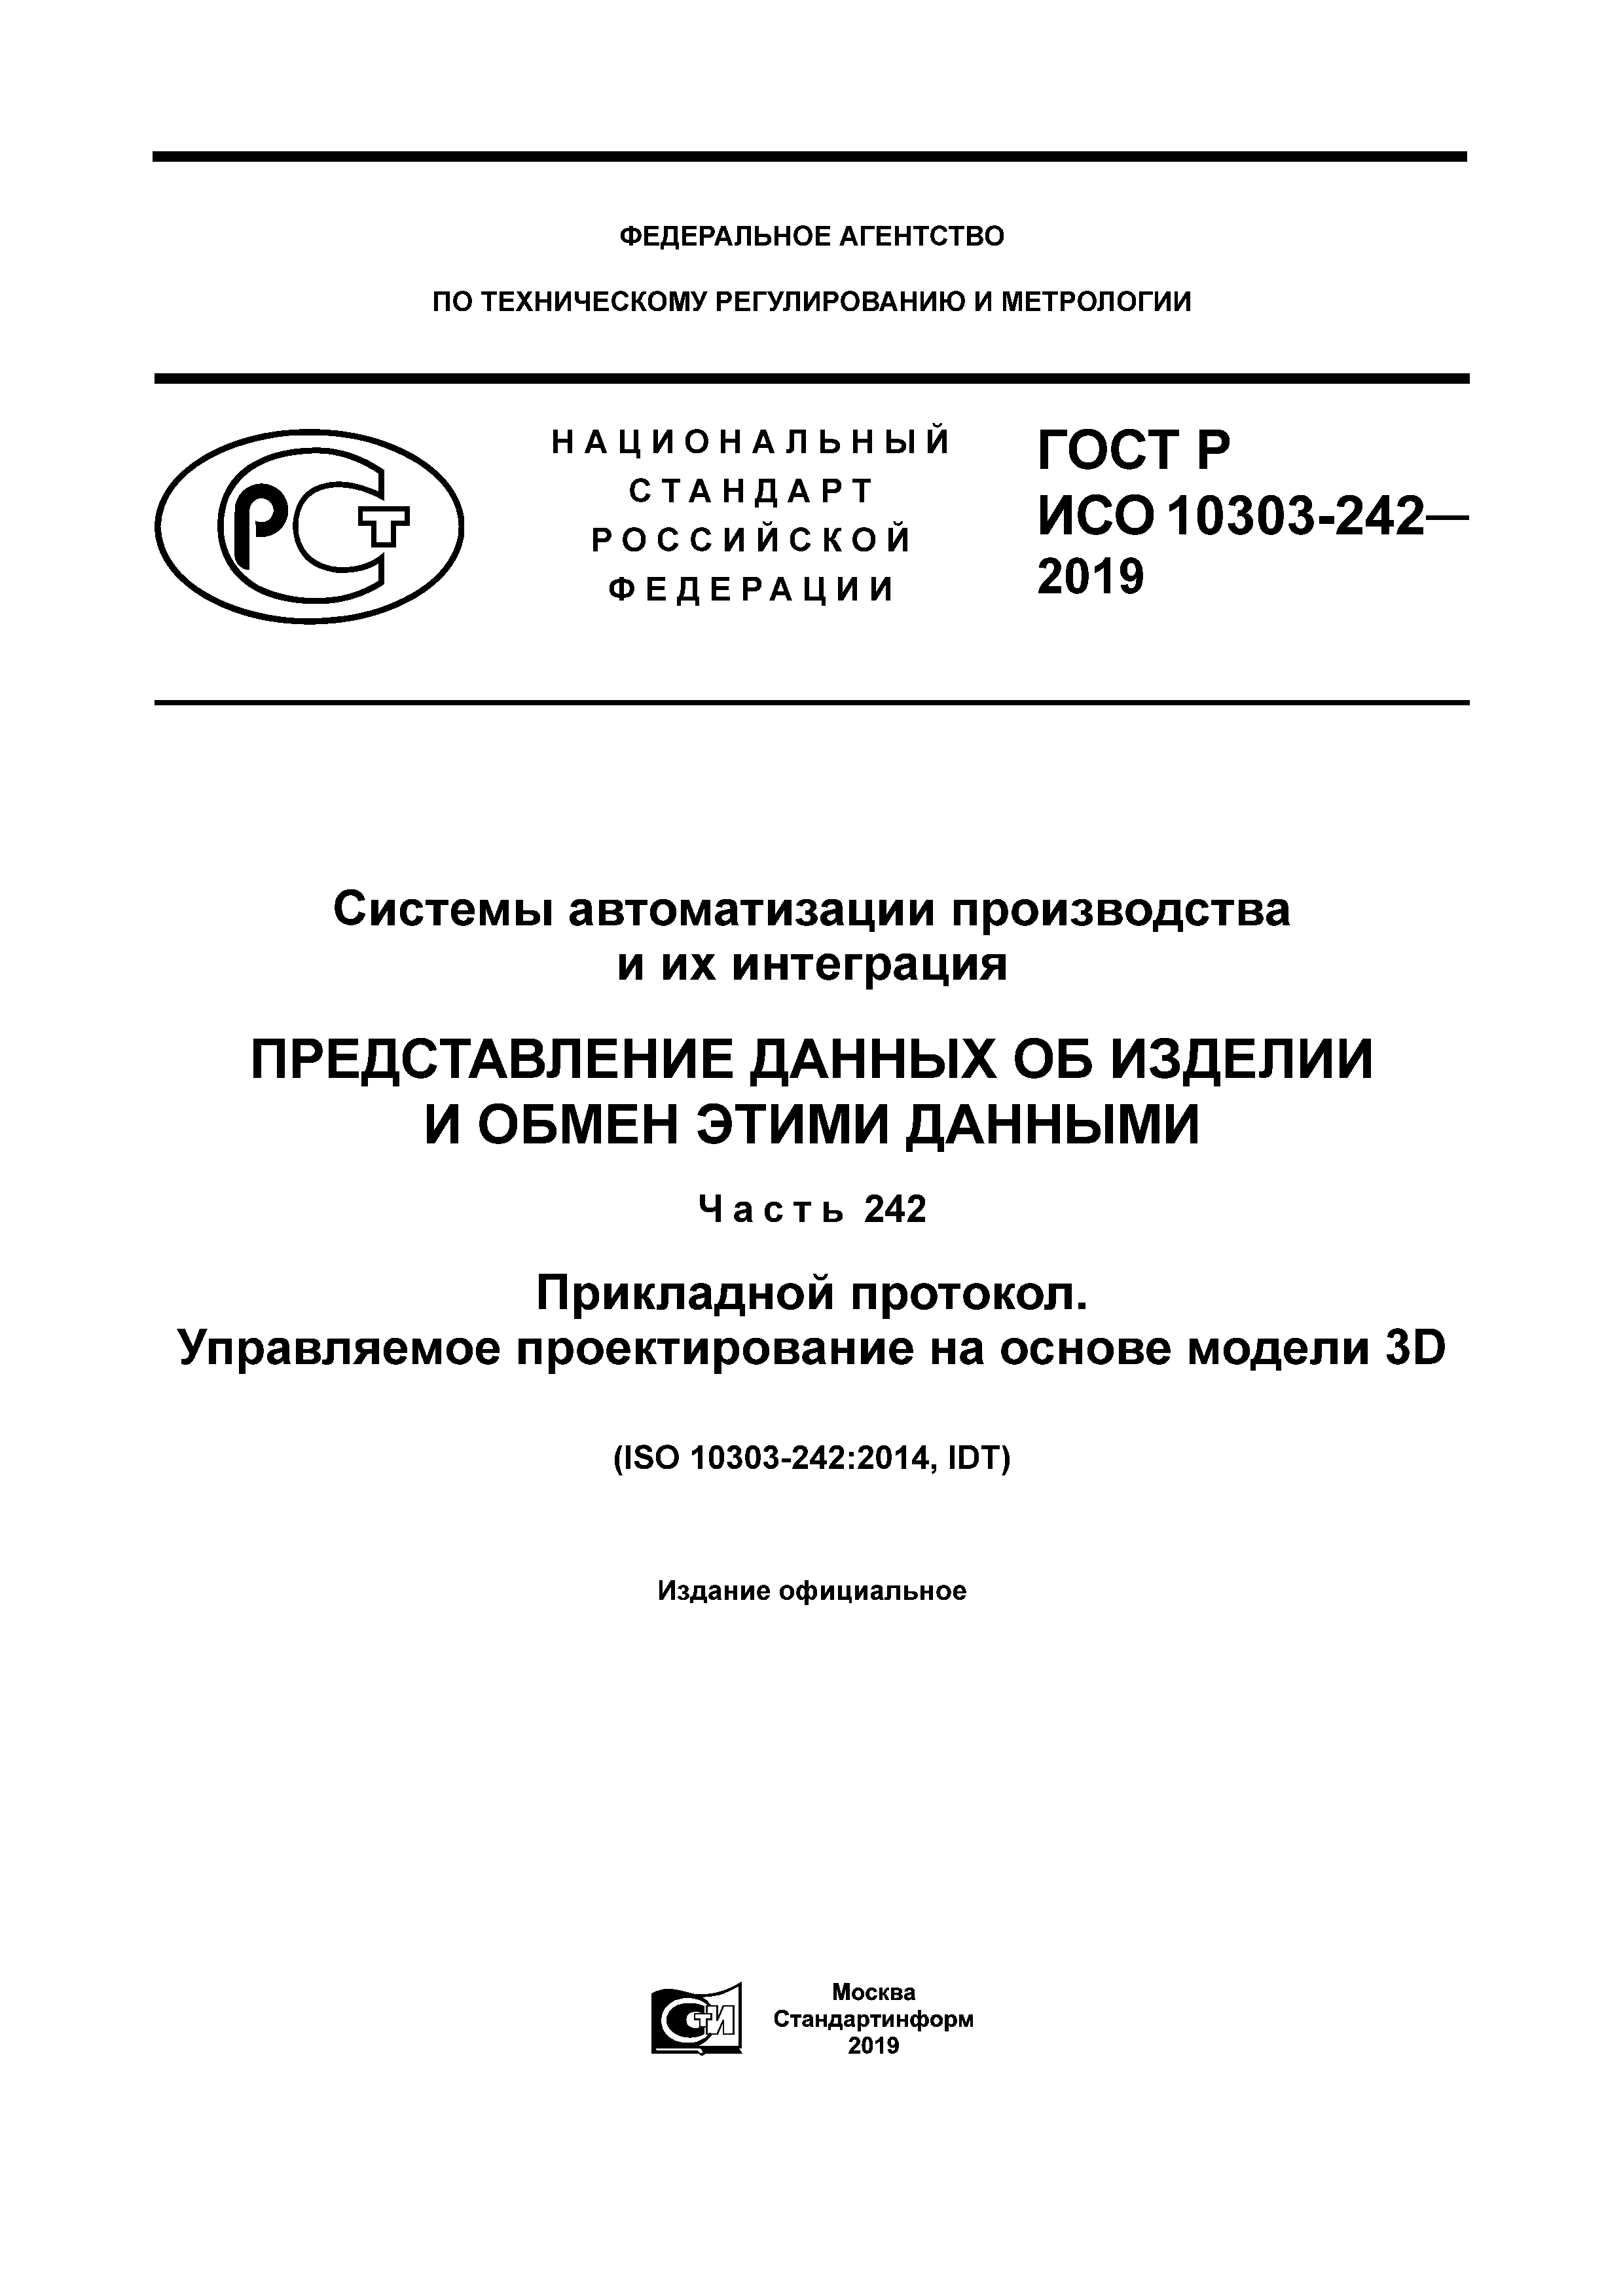 ГОСТ Р ИСО 10303-242-2019